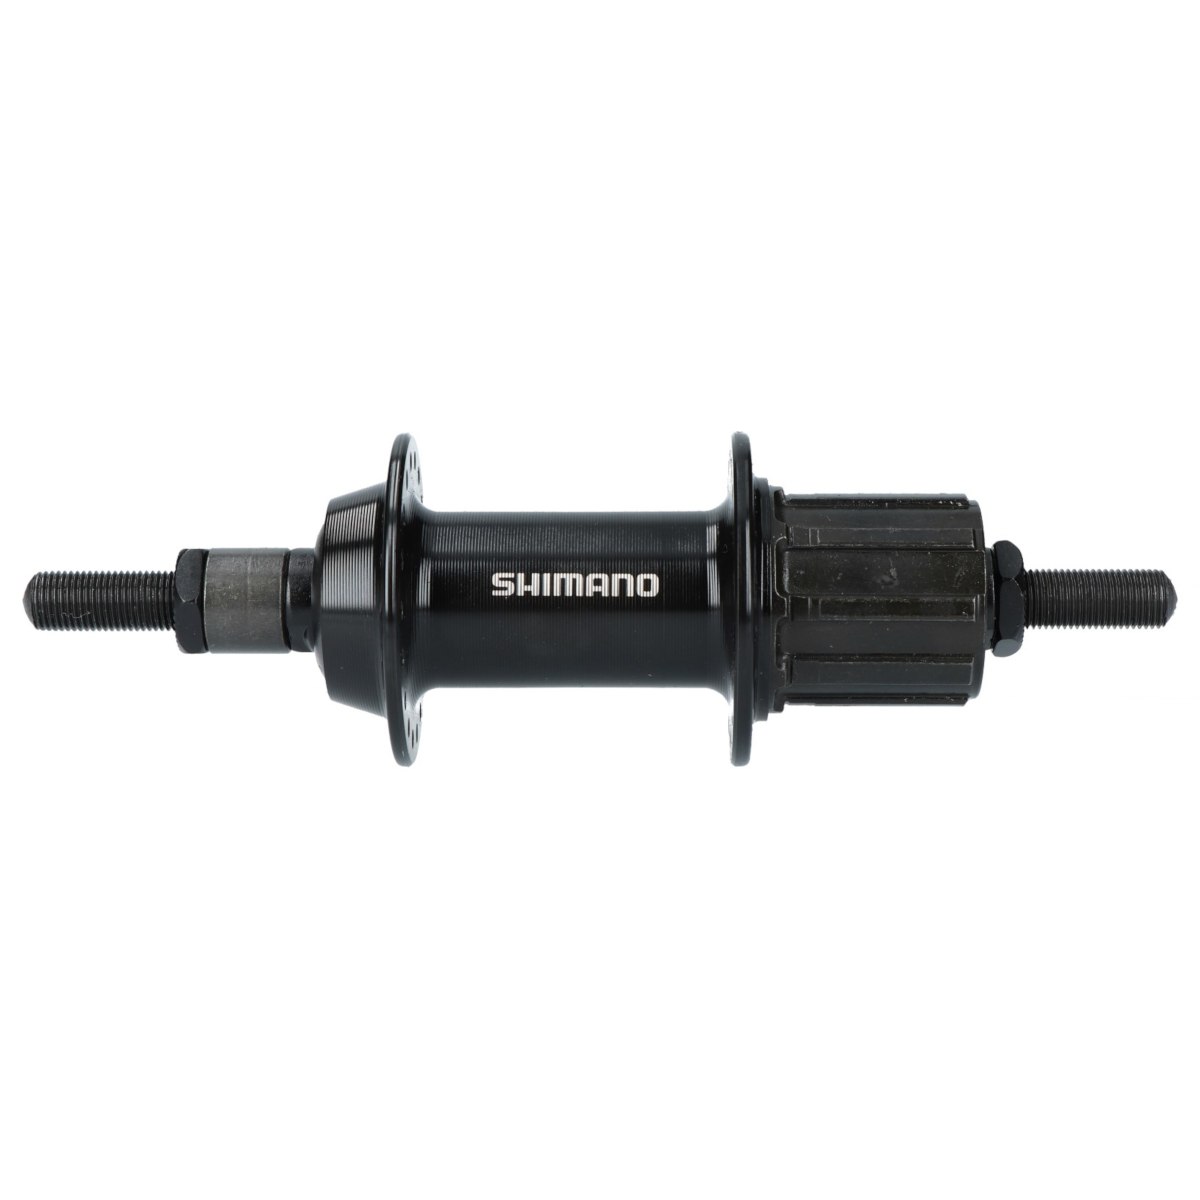 Produktbild von Shimano Tourney FH-TY500-7-NT Hinterradnabe - Felgenbremse - 7-fach - 10x135mm Vollachse - schwarz